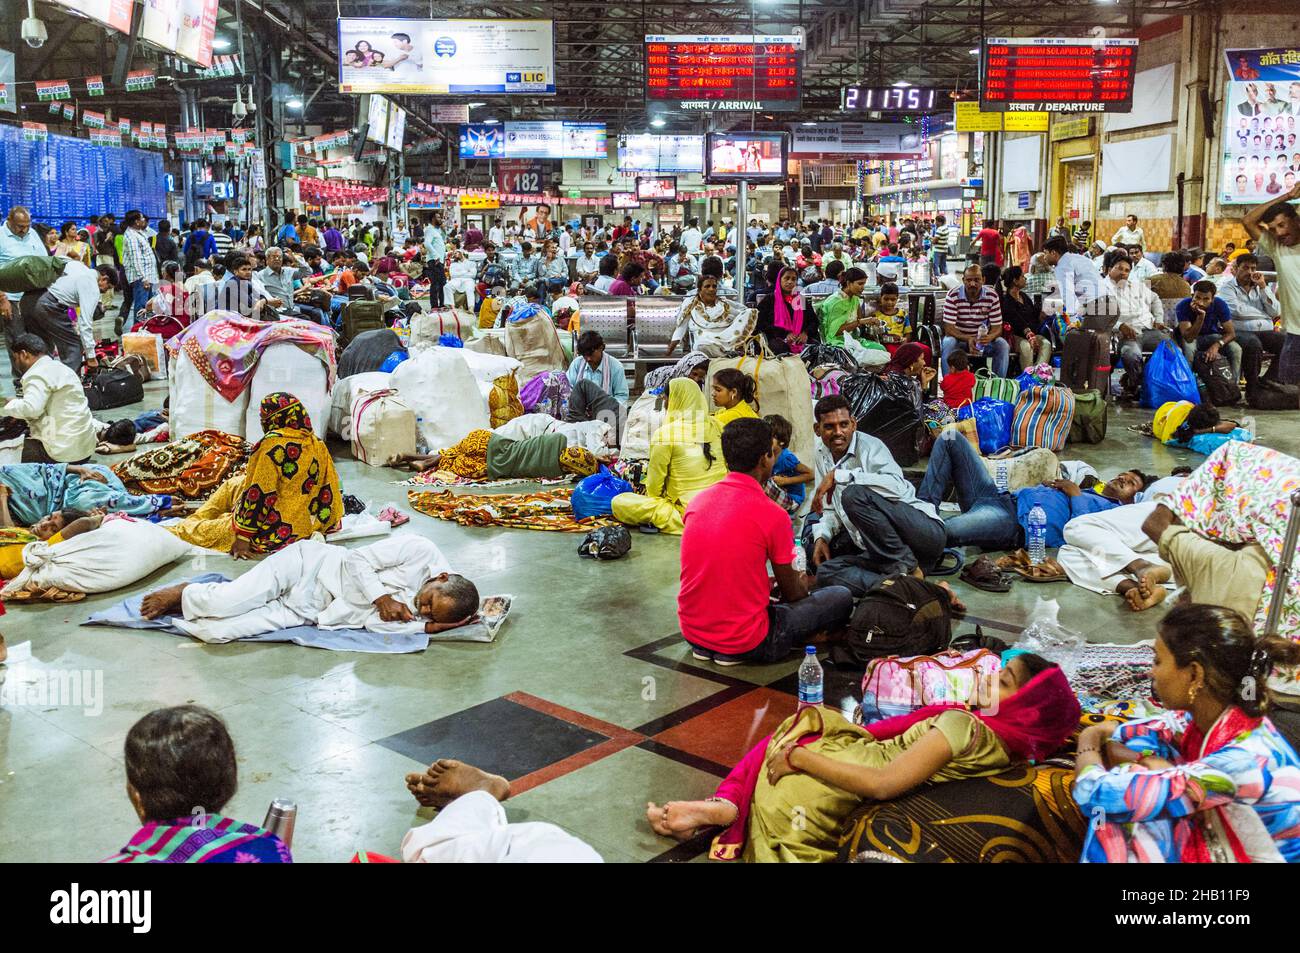 Mumbai, Maharashtra, Inde : les voyageurs attendent leurs trains à l'intérieur de la gare Chhatrapati Shivaji Terminus (anciennement Victoria Terminus) Banque D'Images